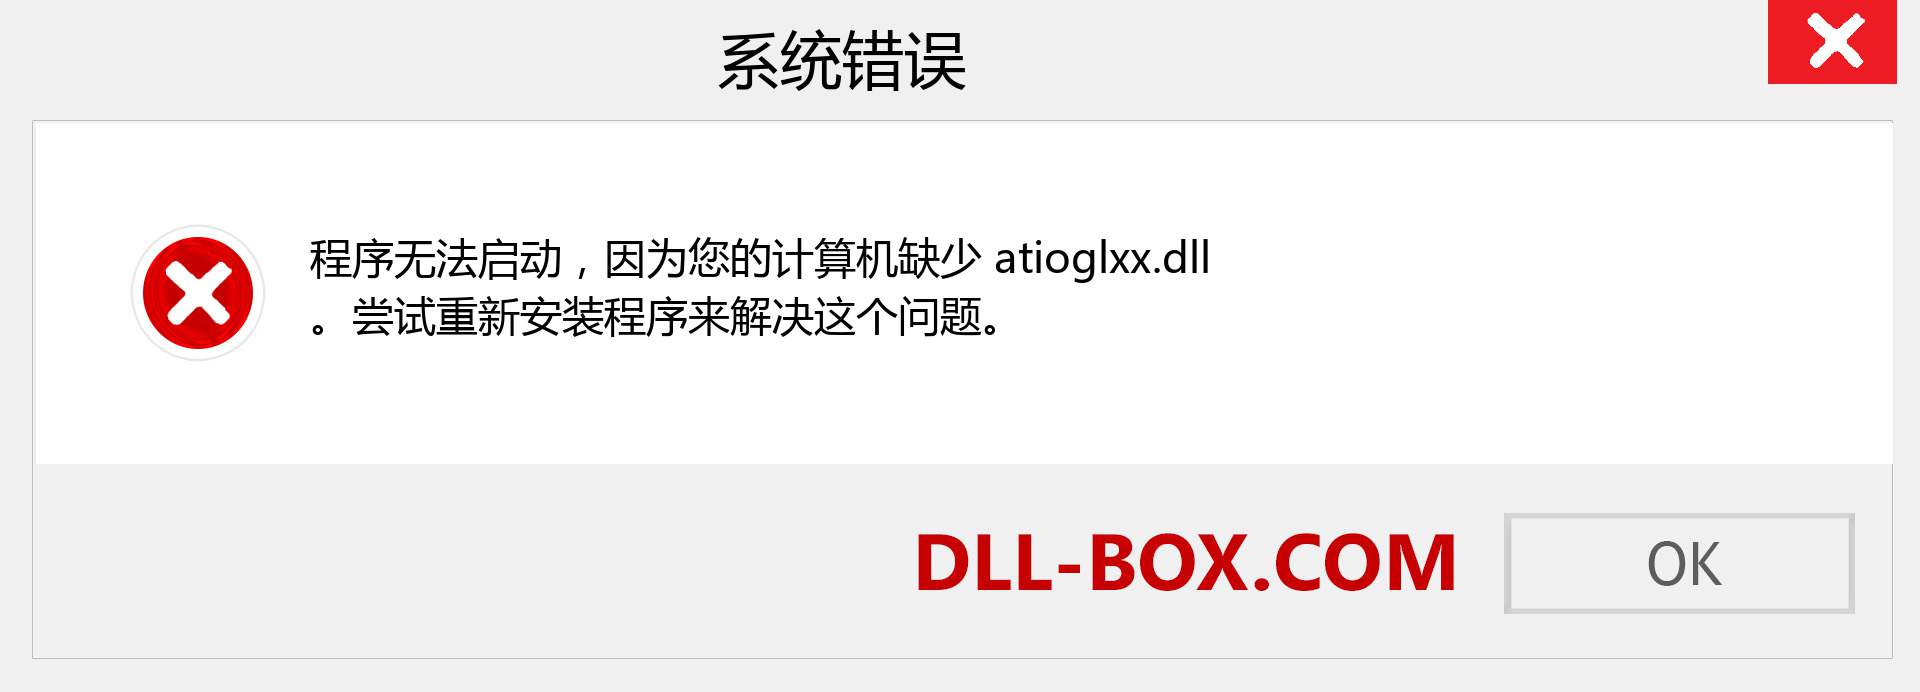 atioglxx.dll 文件丢失？。 适用于 Windows 7、8、10 的下载 - 修复 Windows、照片、图像上的 atioglxx dll 丢失错误